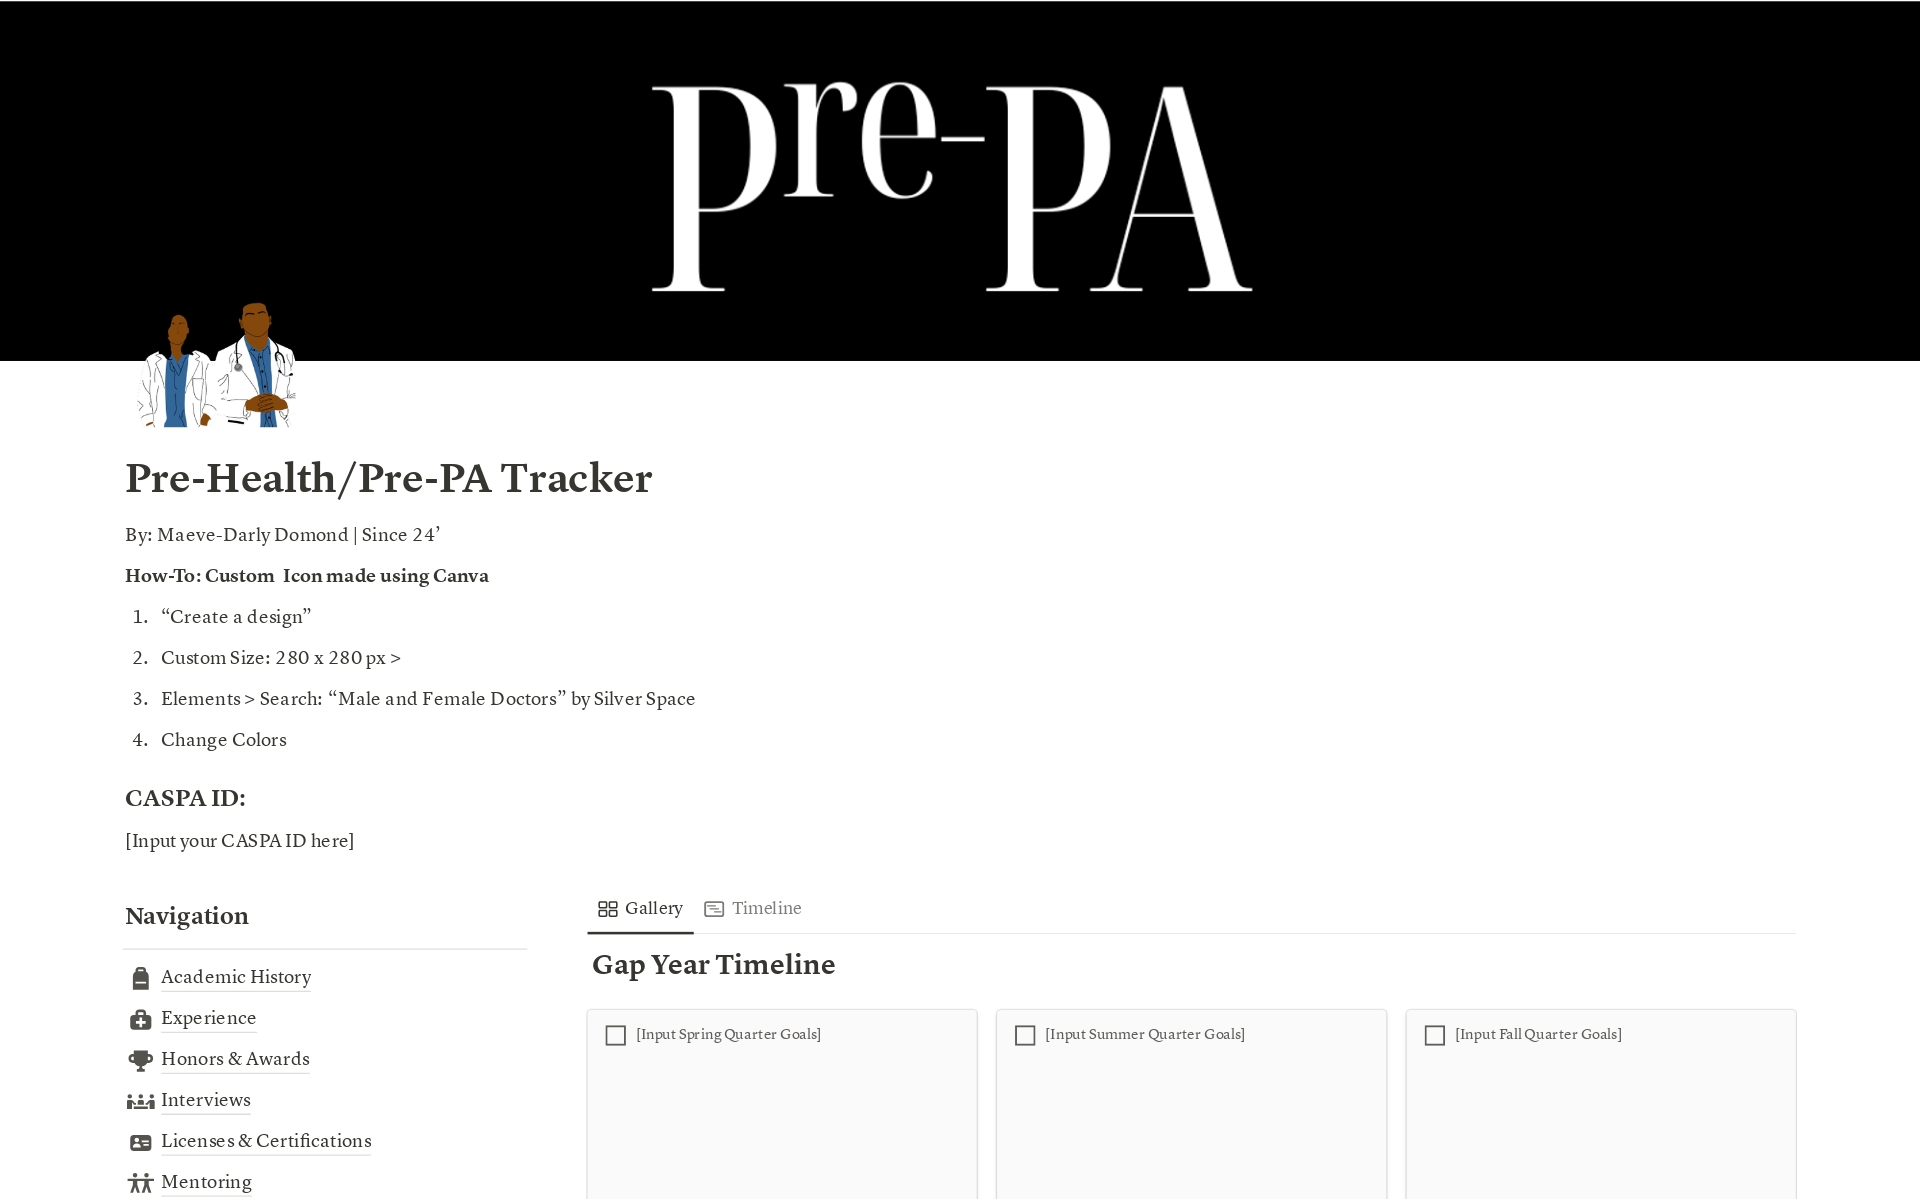 Vista previa de una plantilla para Pre-Health/Pre-PA Application Material Tracker